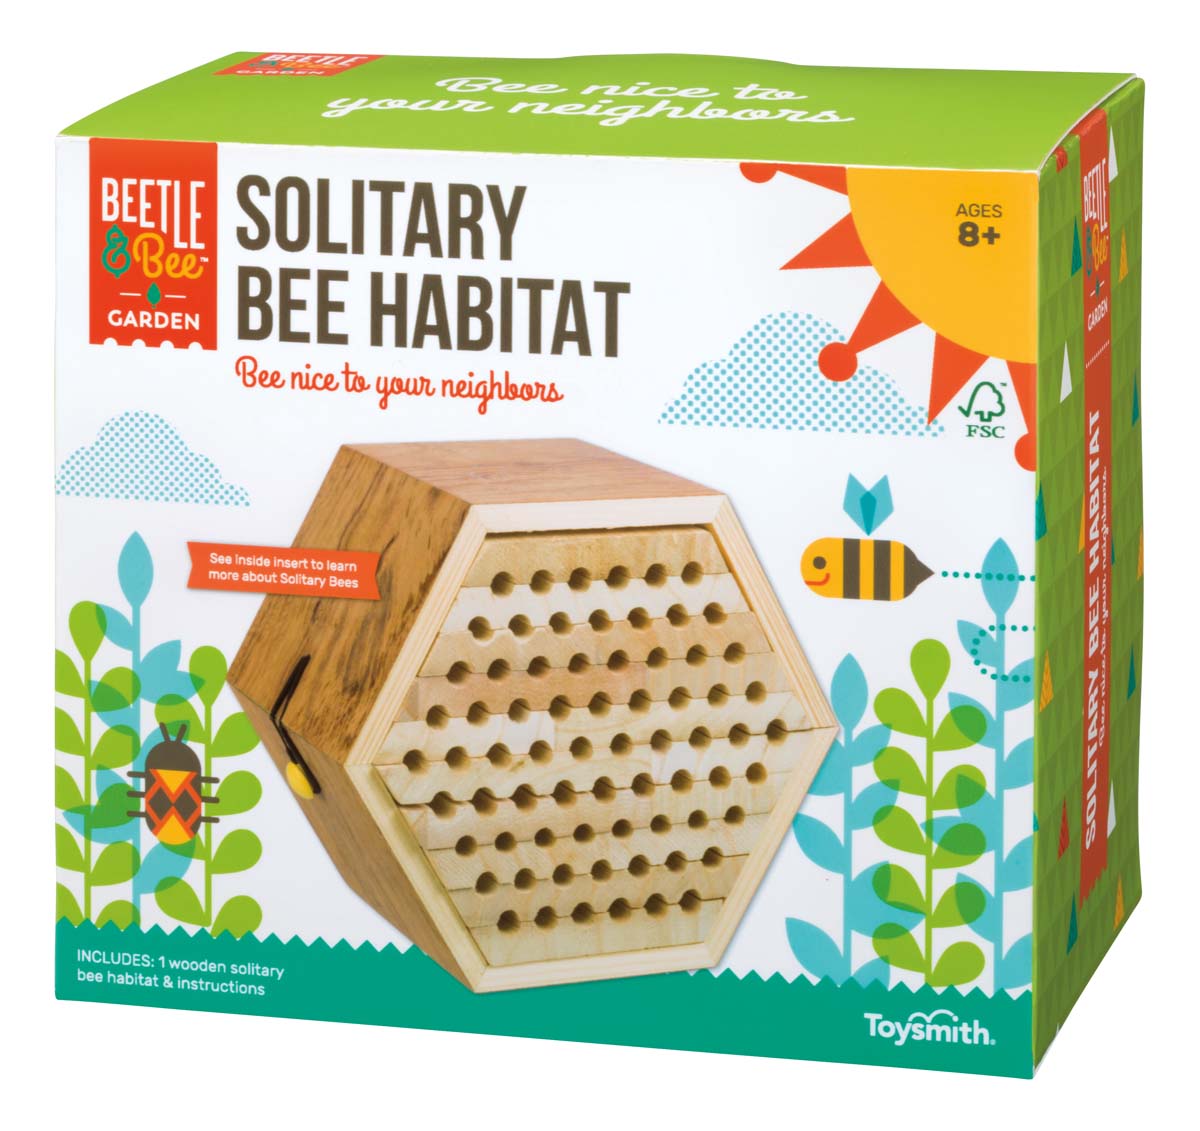 Beetle & Bee Garden Solitary Bee Habitat